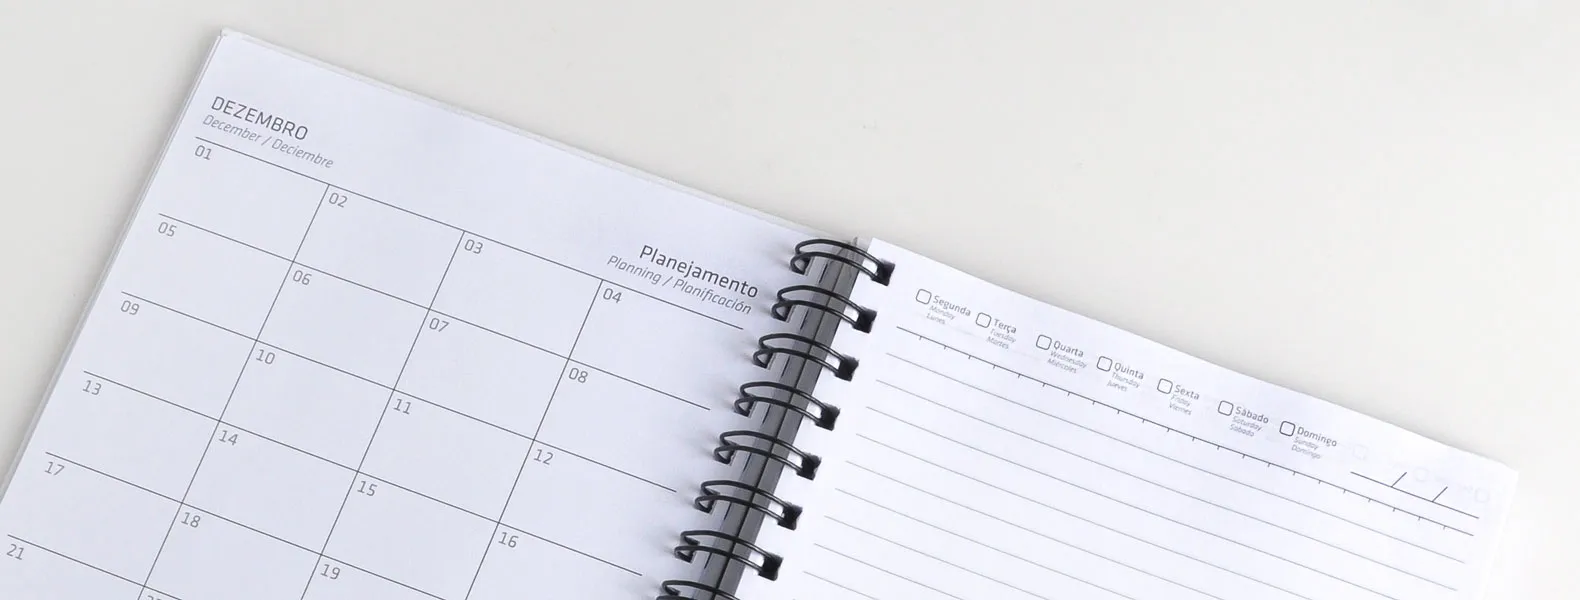 Caderno para anotações wire-o branco com capa dura. Conta com folha para dados pessoais, calendário e 100 folhas pautadas. Gramatura da folha de 70 g/m2